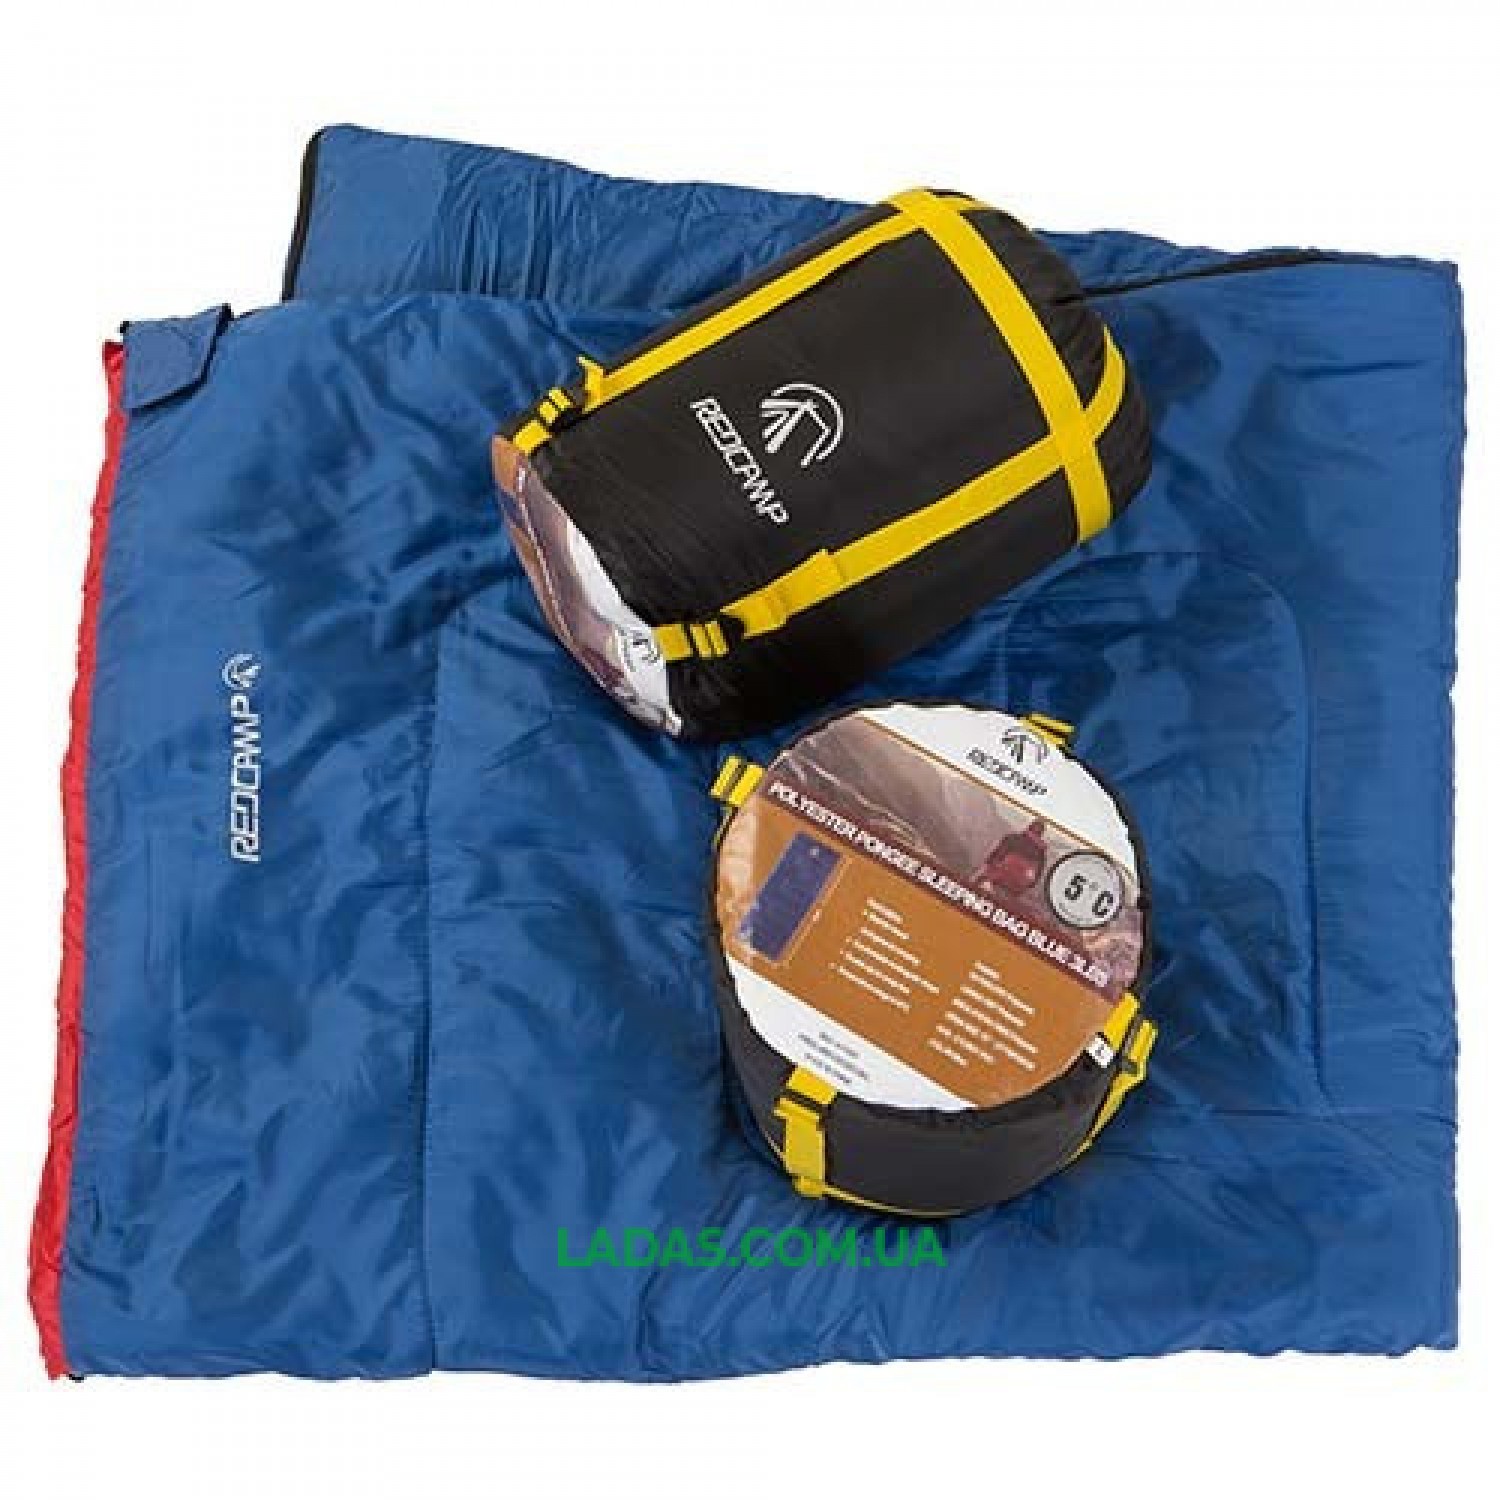 Спальный мешок одеяло REDCAMP RC484/3-18BY (PL, 400г на м2,р-р 190*84cm, цвет синий)